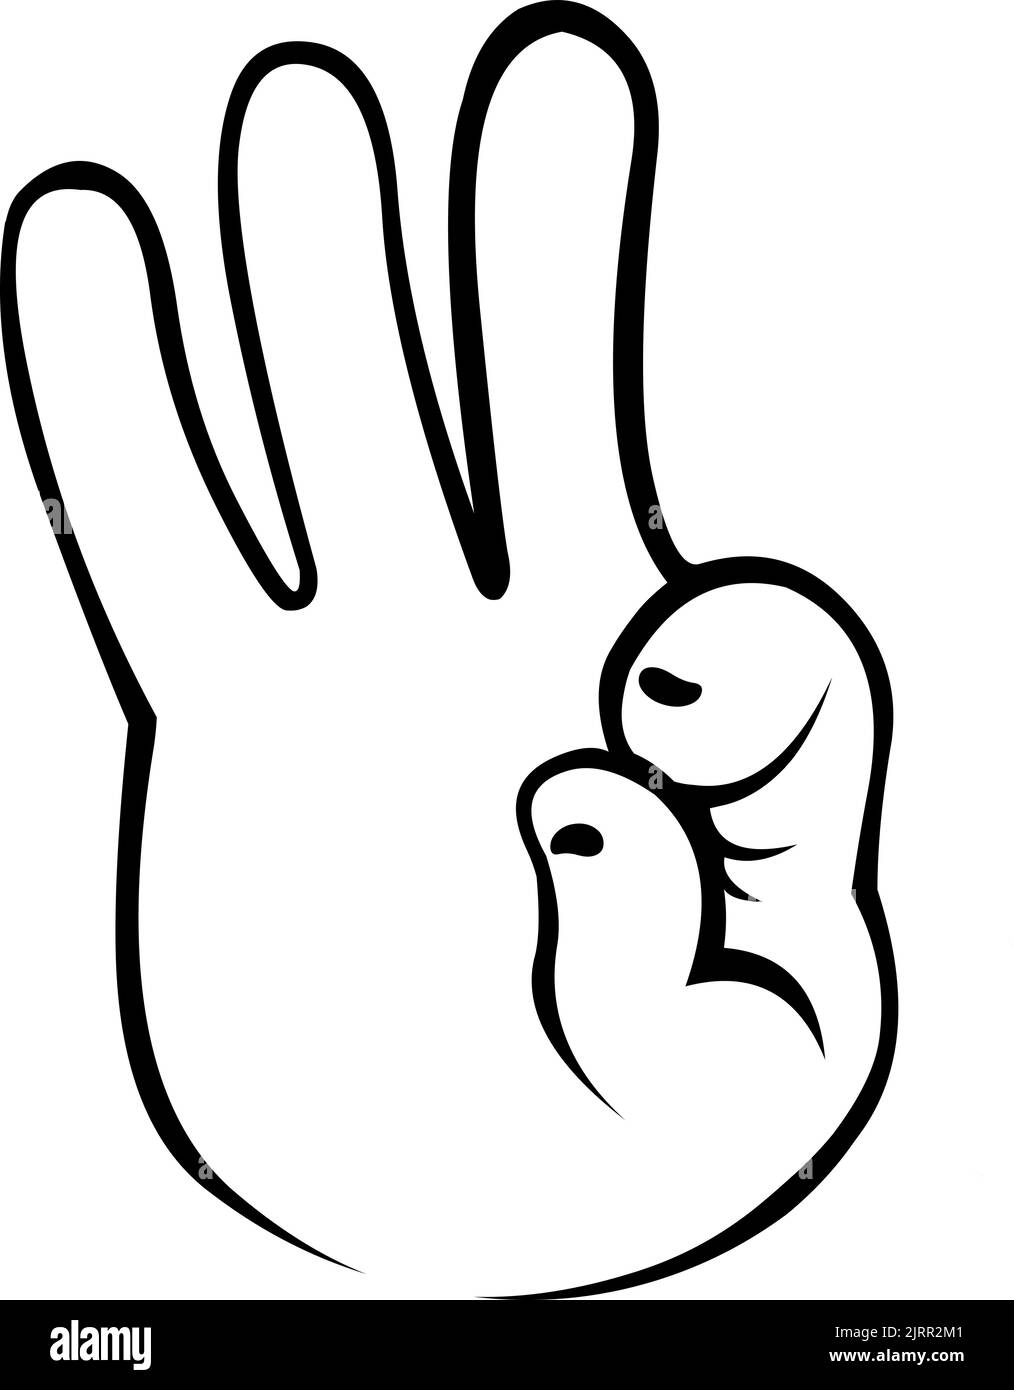 Vektordarstellung einer Hand, die eine gute oder perfekte Geste macht, in Schwarz und Weiß gezeichnet Stock Vektor